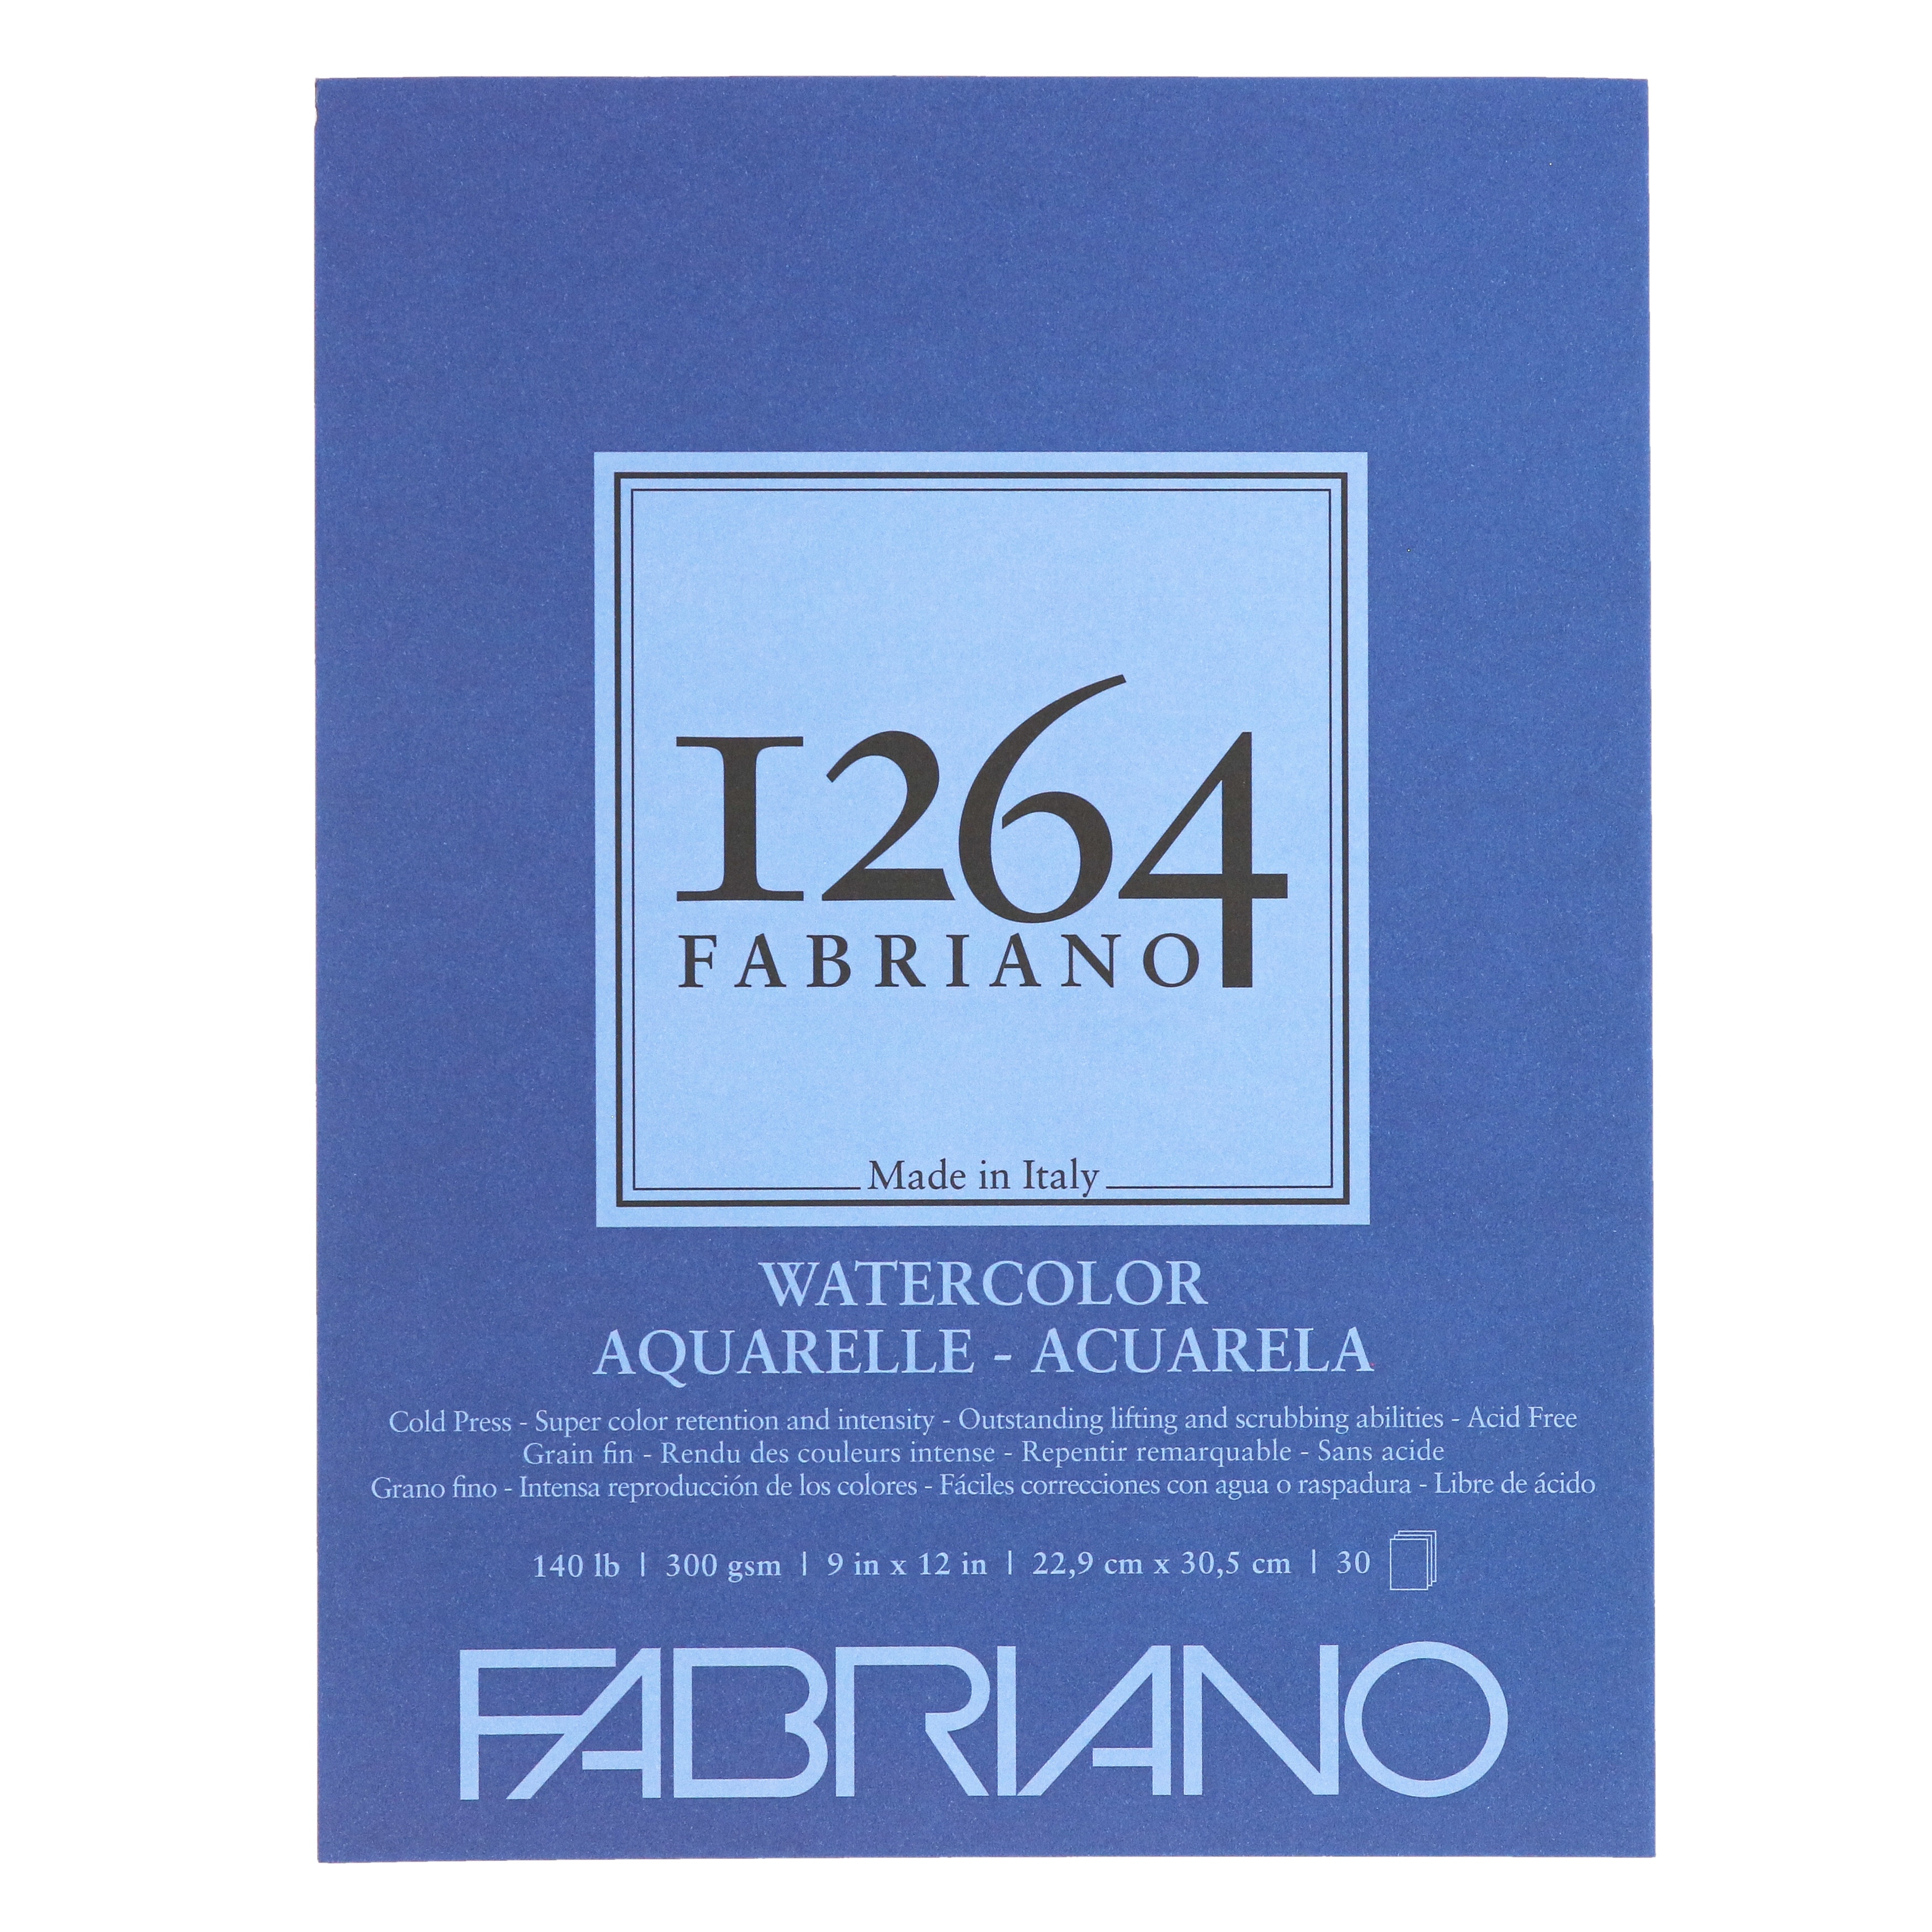 Fabriano 1264 Watercolor Pad Cold pressed 9"x12"